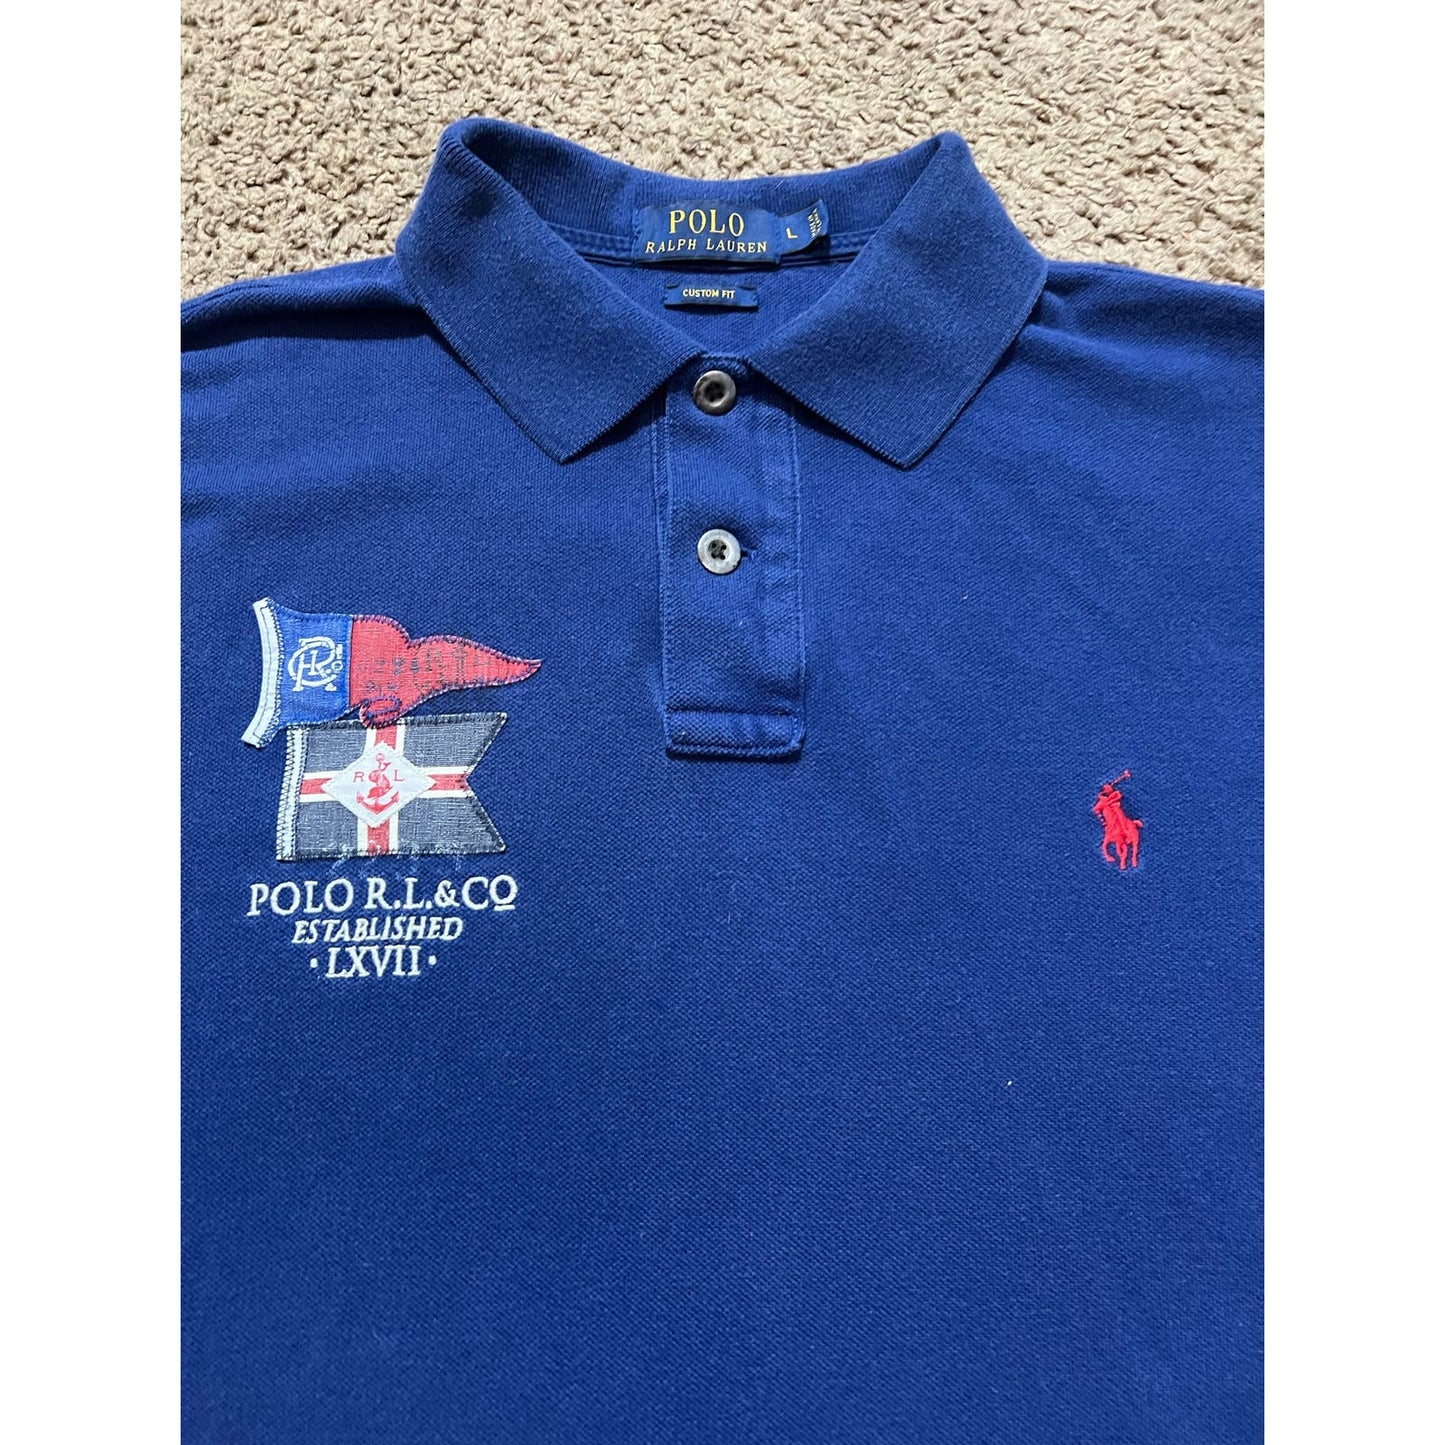 Polo Ralph Lauren collar Shirt